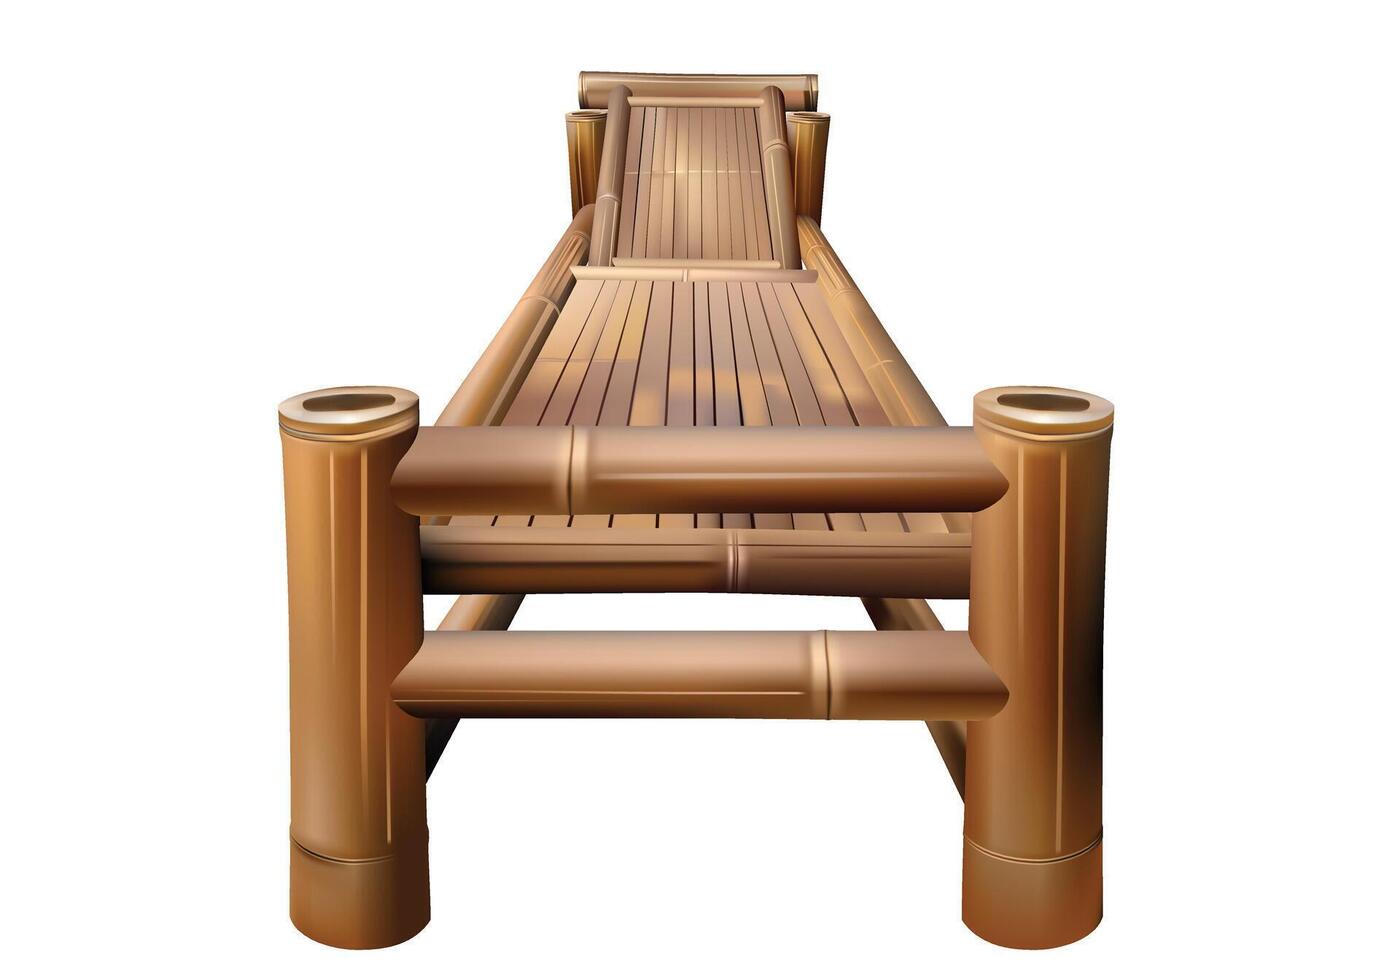 Bambus Liege Salon Stuhl Vektor Illustration zum Hintergrund Design. isoliert auf Weiß Hintergrund.